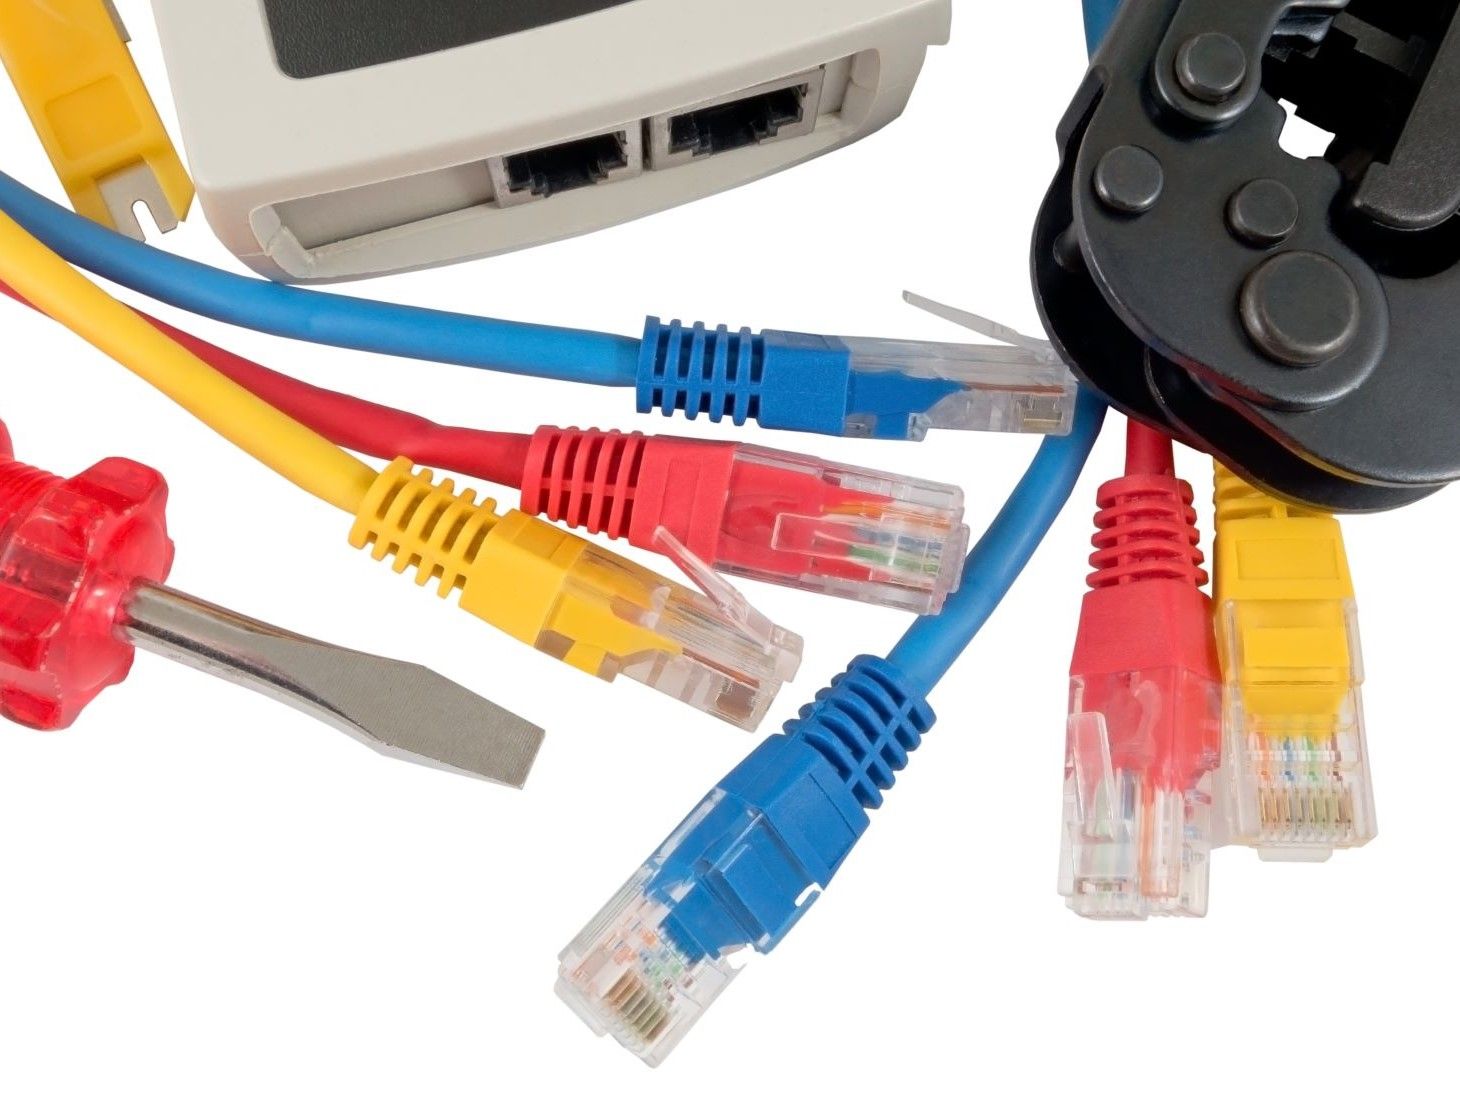 przewód patchcordu używany w strukturalnej instalacji kablowej